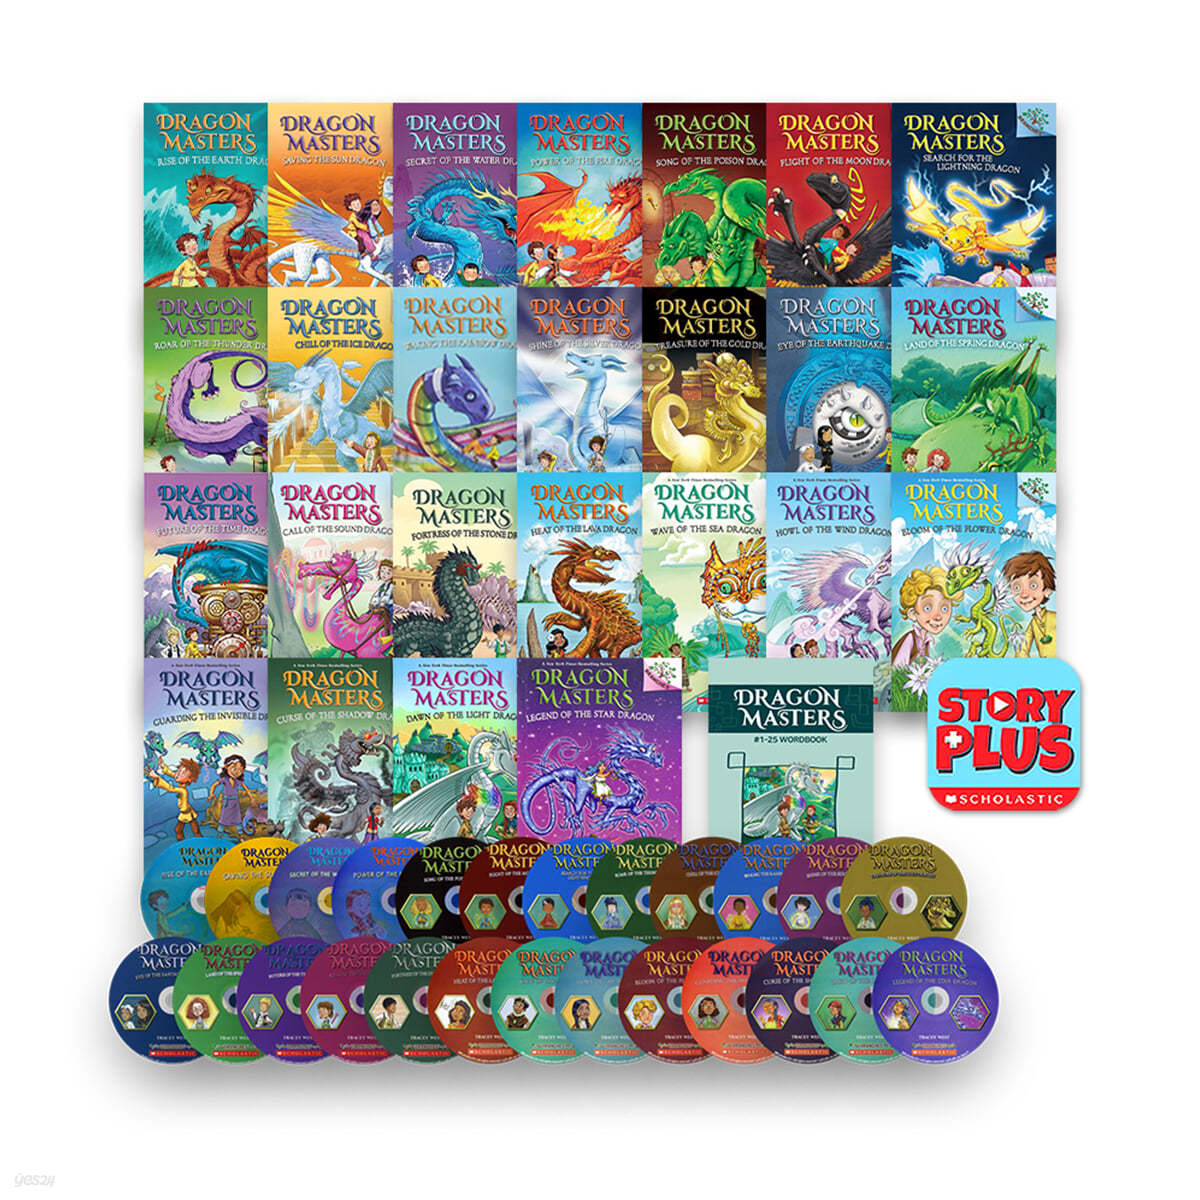 드래곤 마스터즈 원서 25종 세트 Dragon Masters #1-25 (with MP3 CD & Storyplus)+Wordbook Set